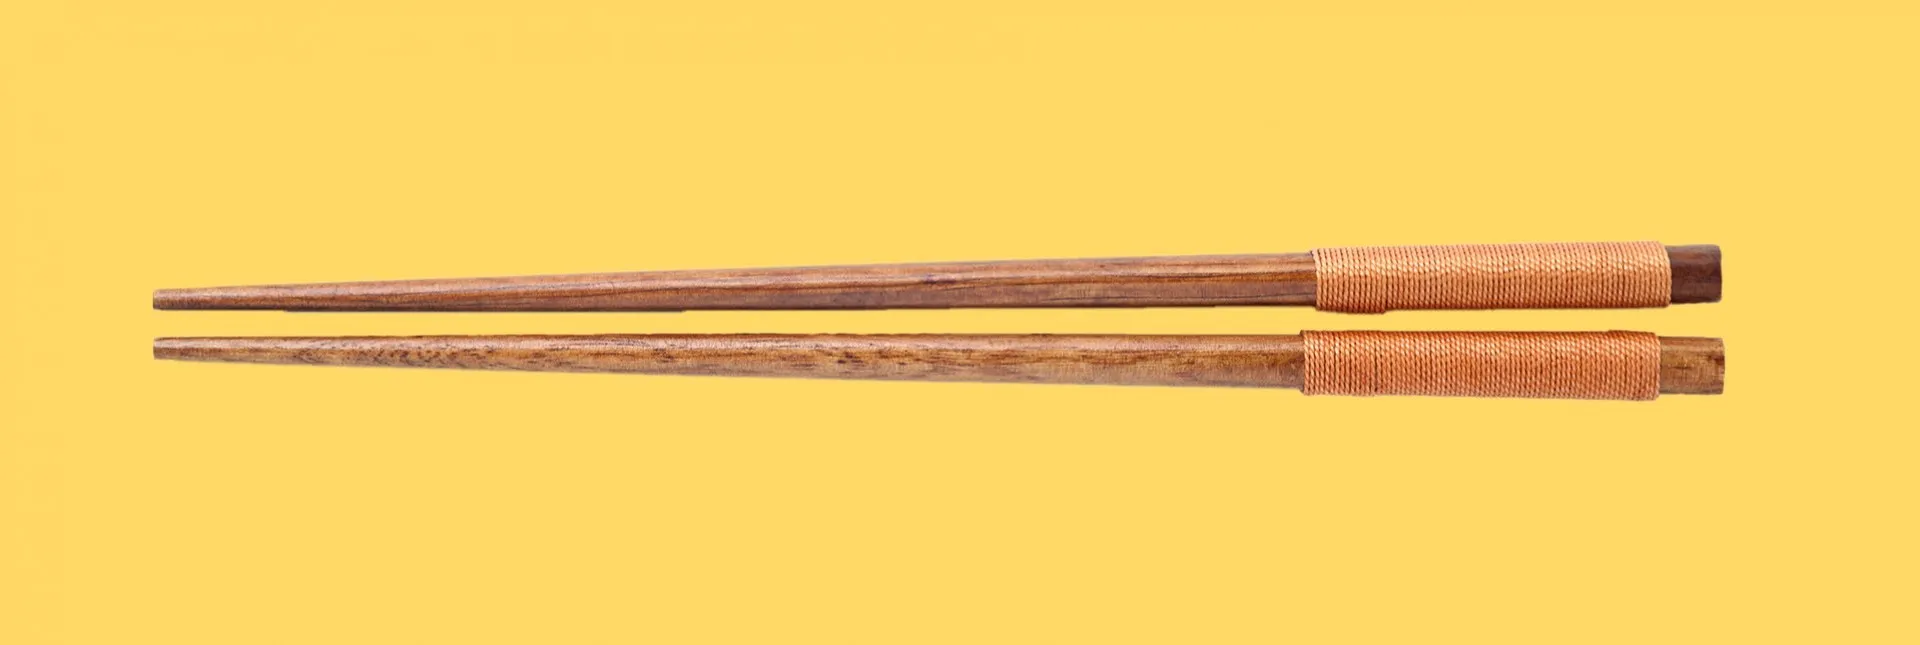 Cómo se usan los palillos chinos?